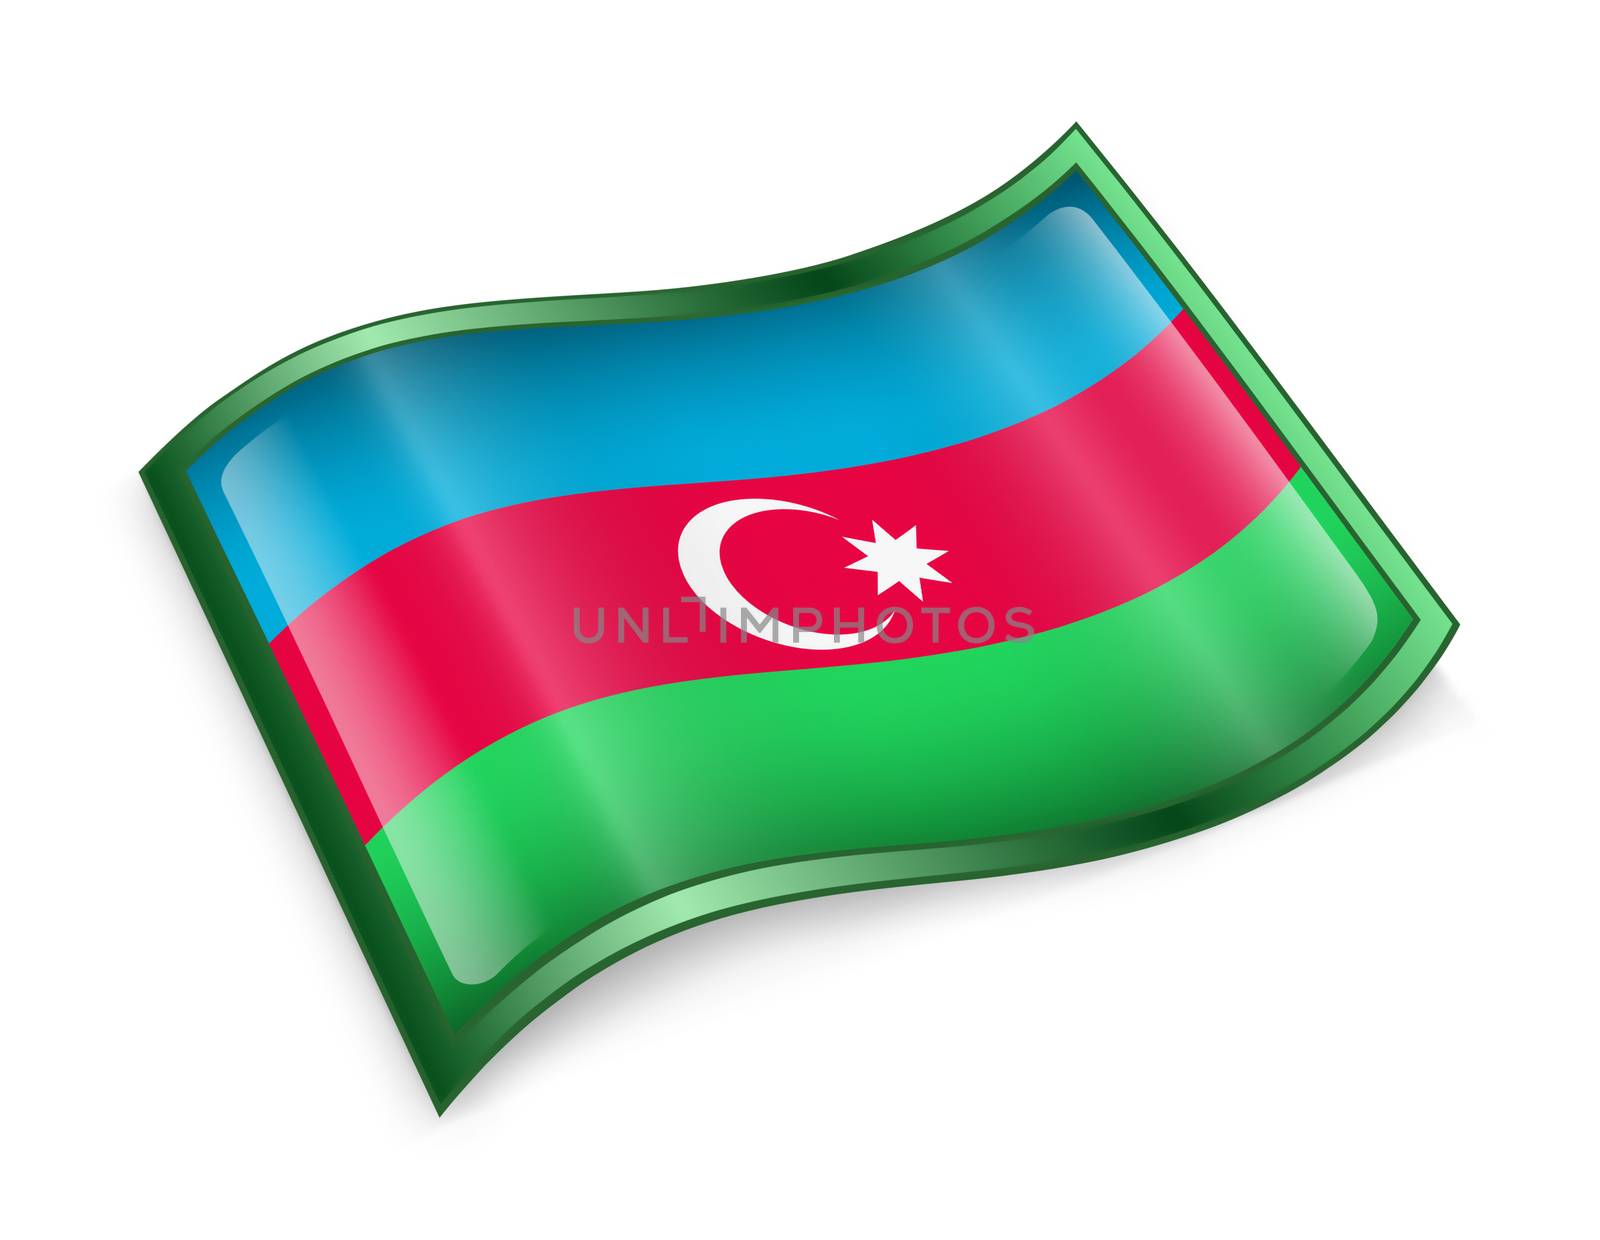 Azerbaijan Flag icon, isolated on white background.